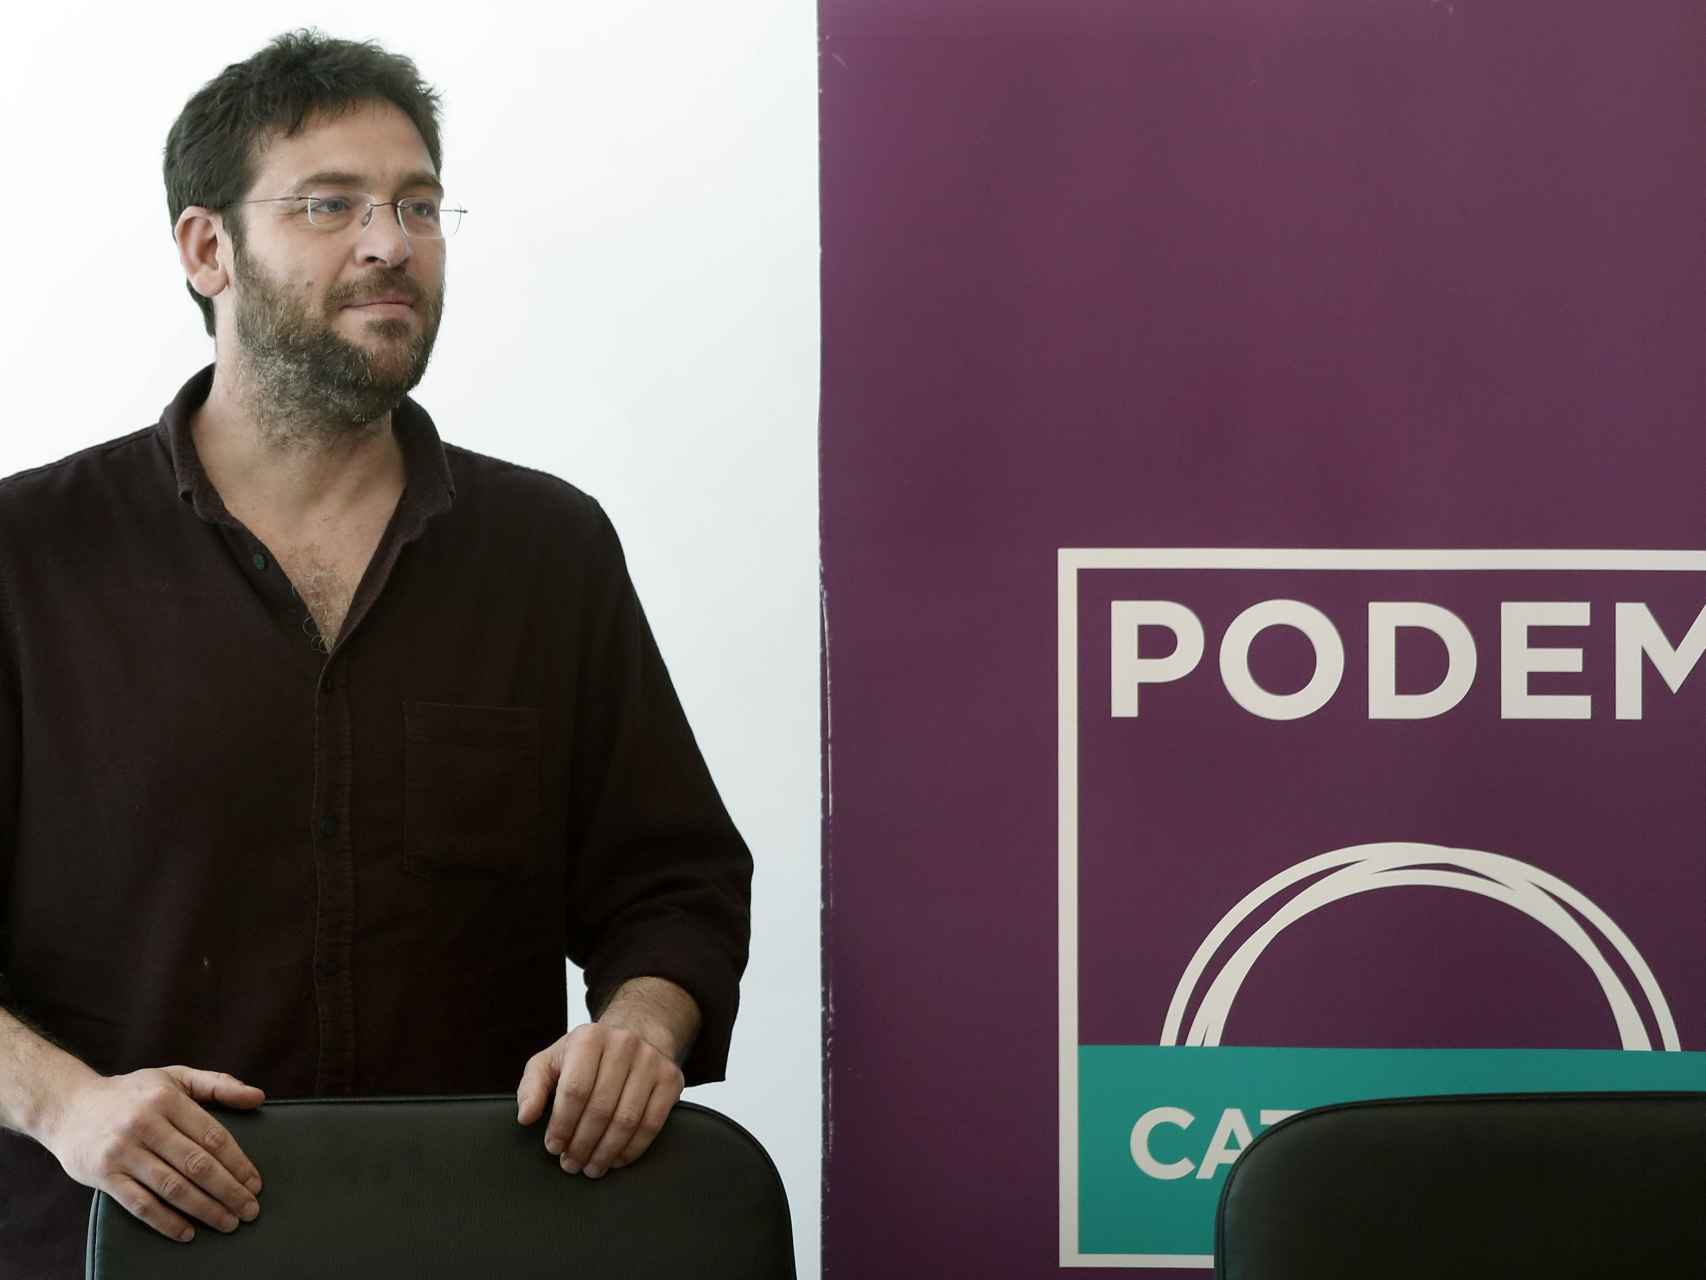 El líder de Podem, Albano Dante Fachin, en una rueda de prensa.